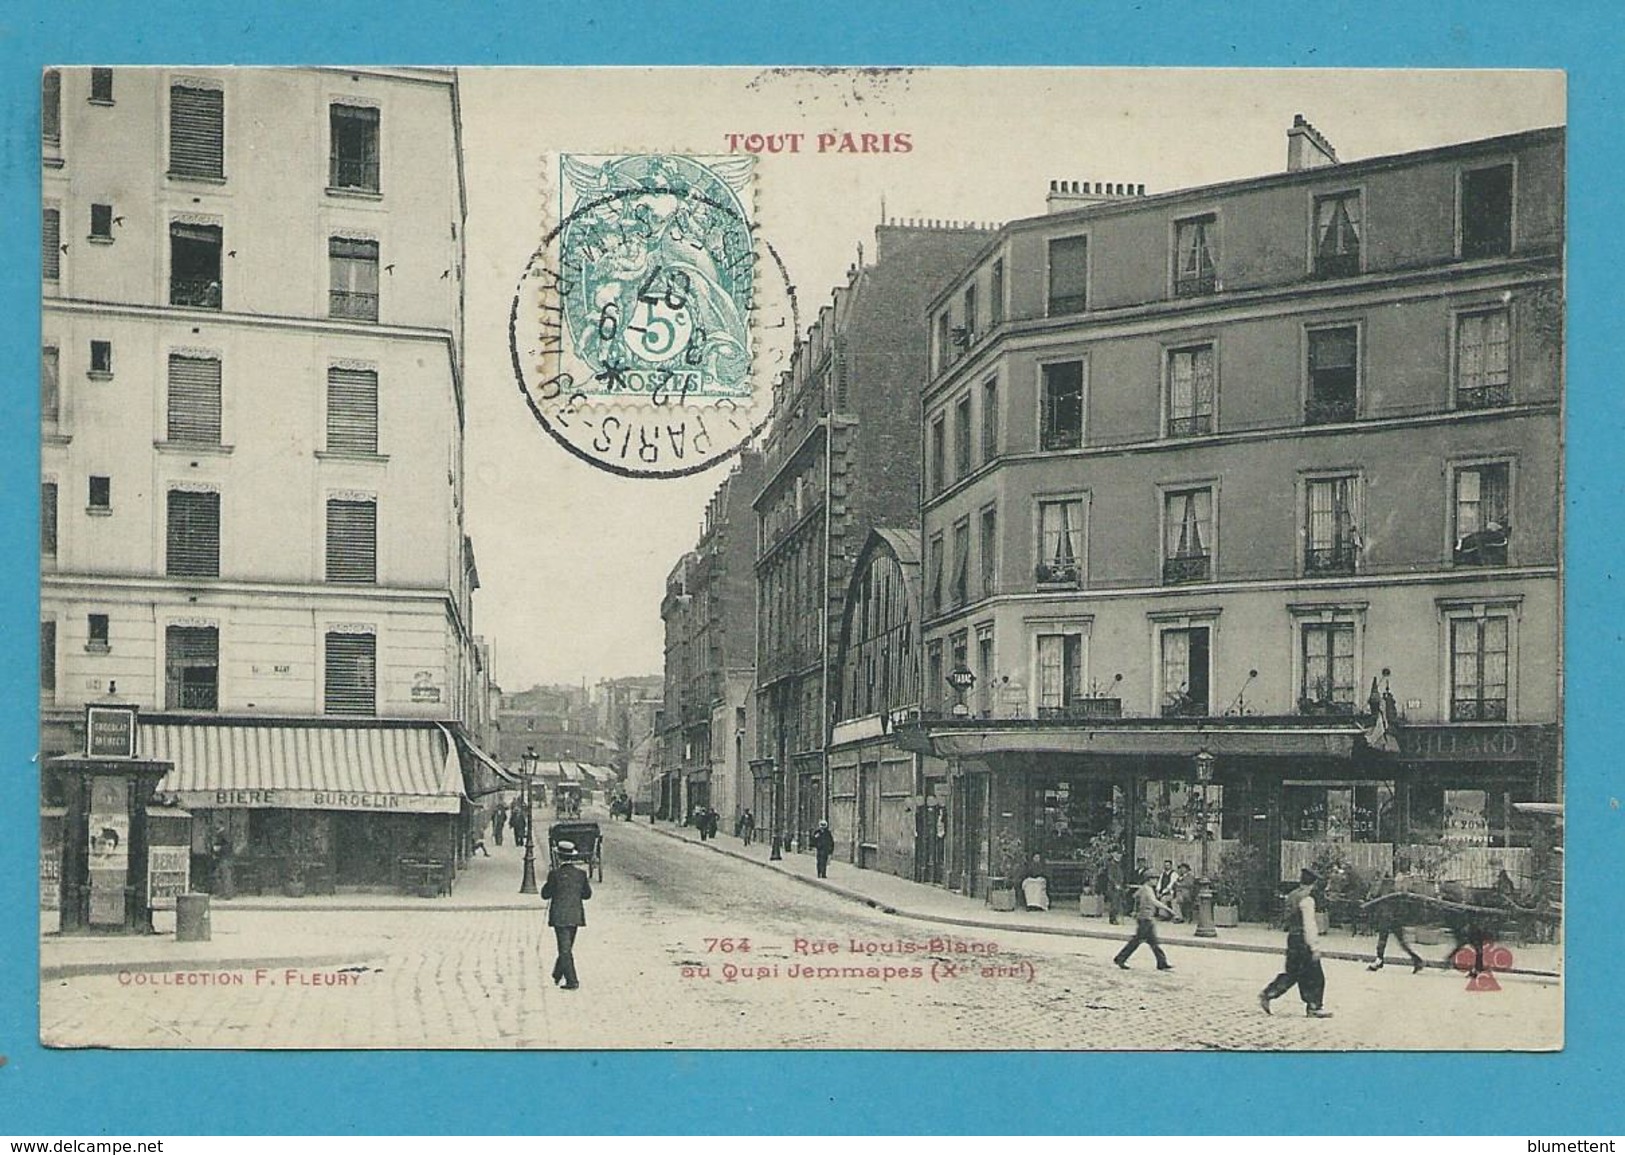 CPA TOUT PARIS 764 - Rue Louis-Blanc (Xème Arrt.) Edition FLEURY - Paris (10)